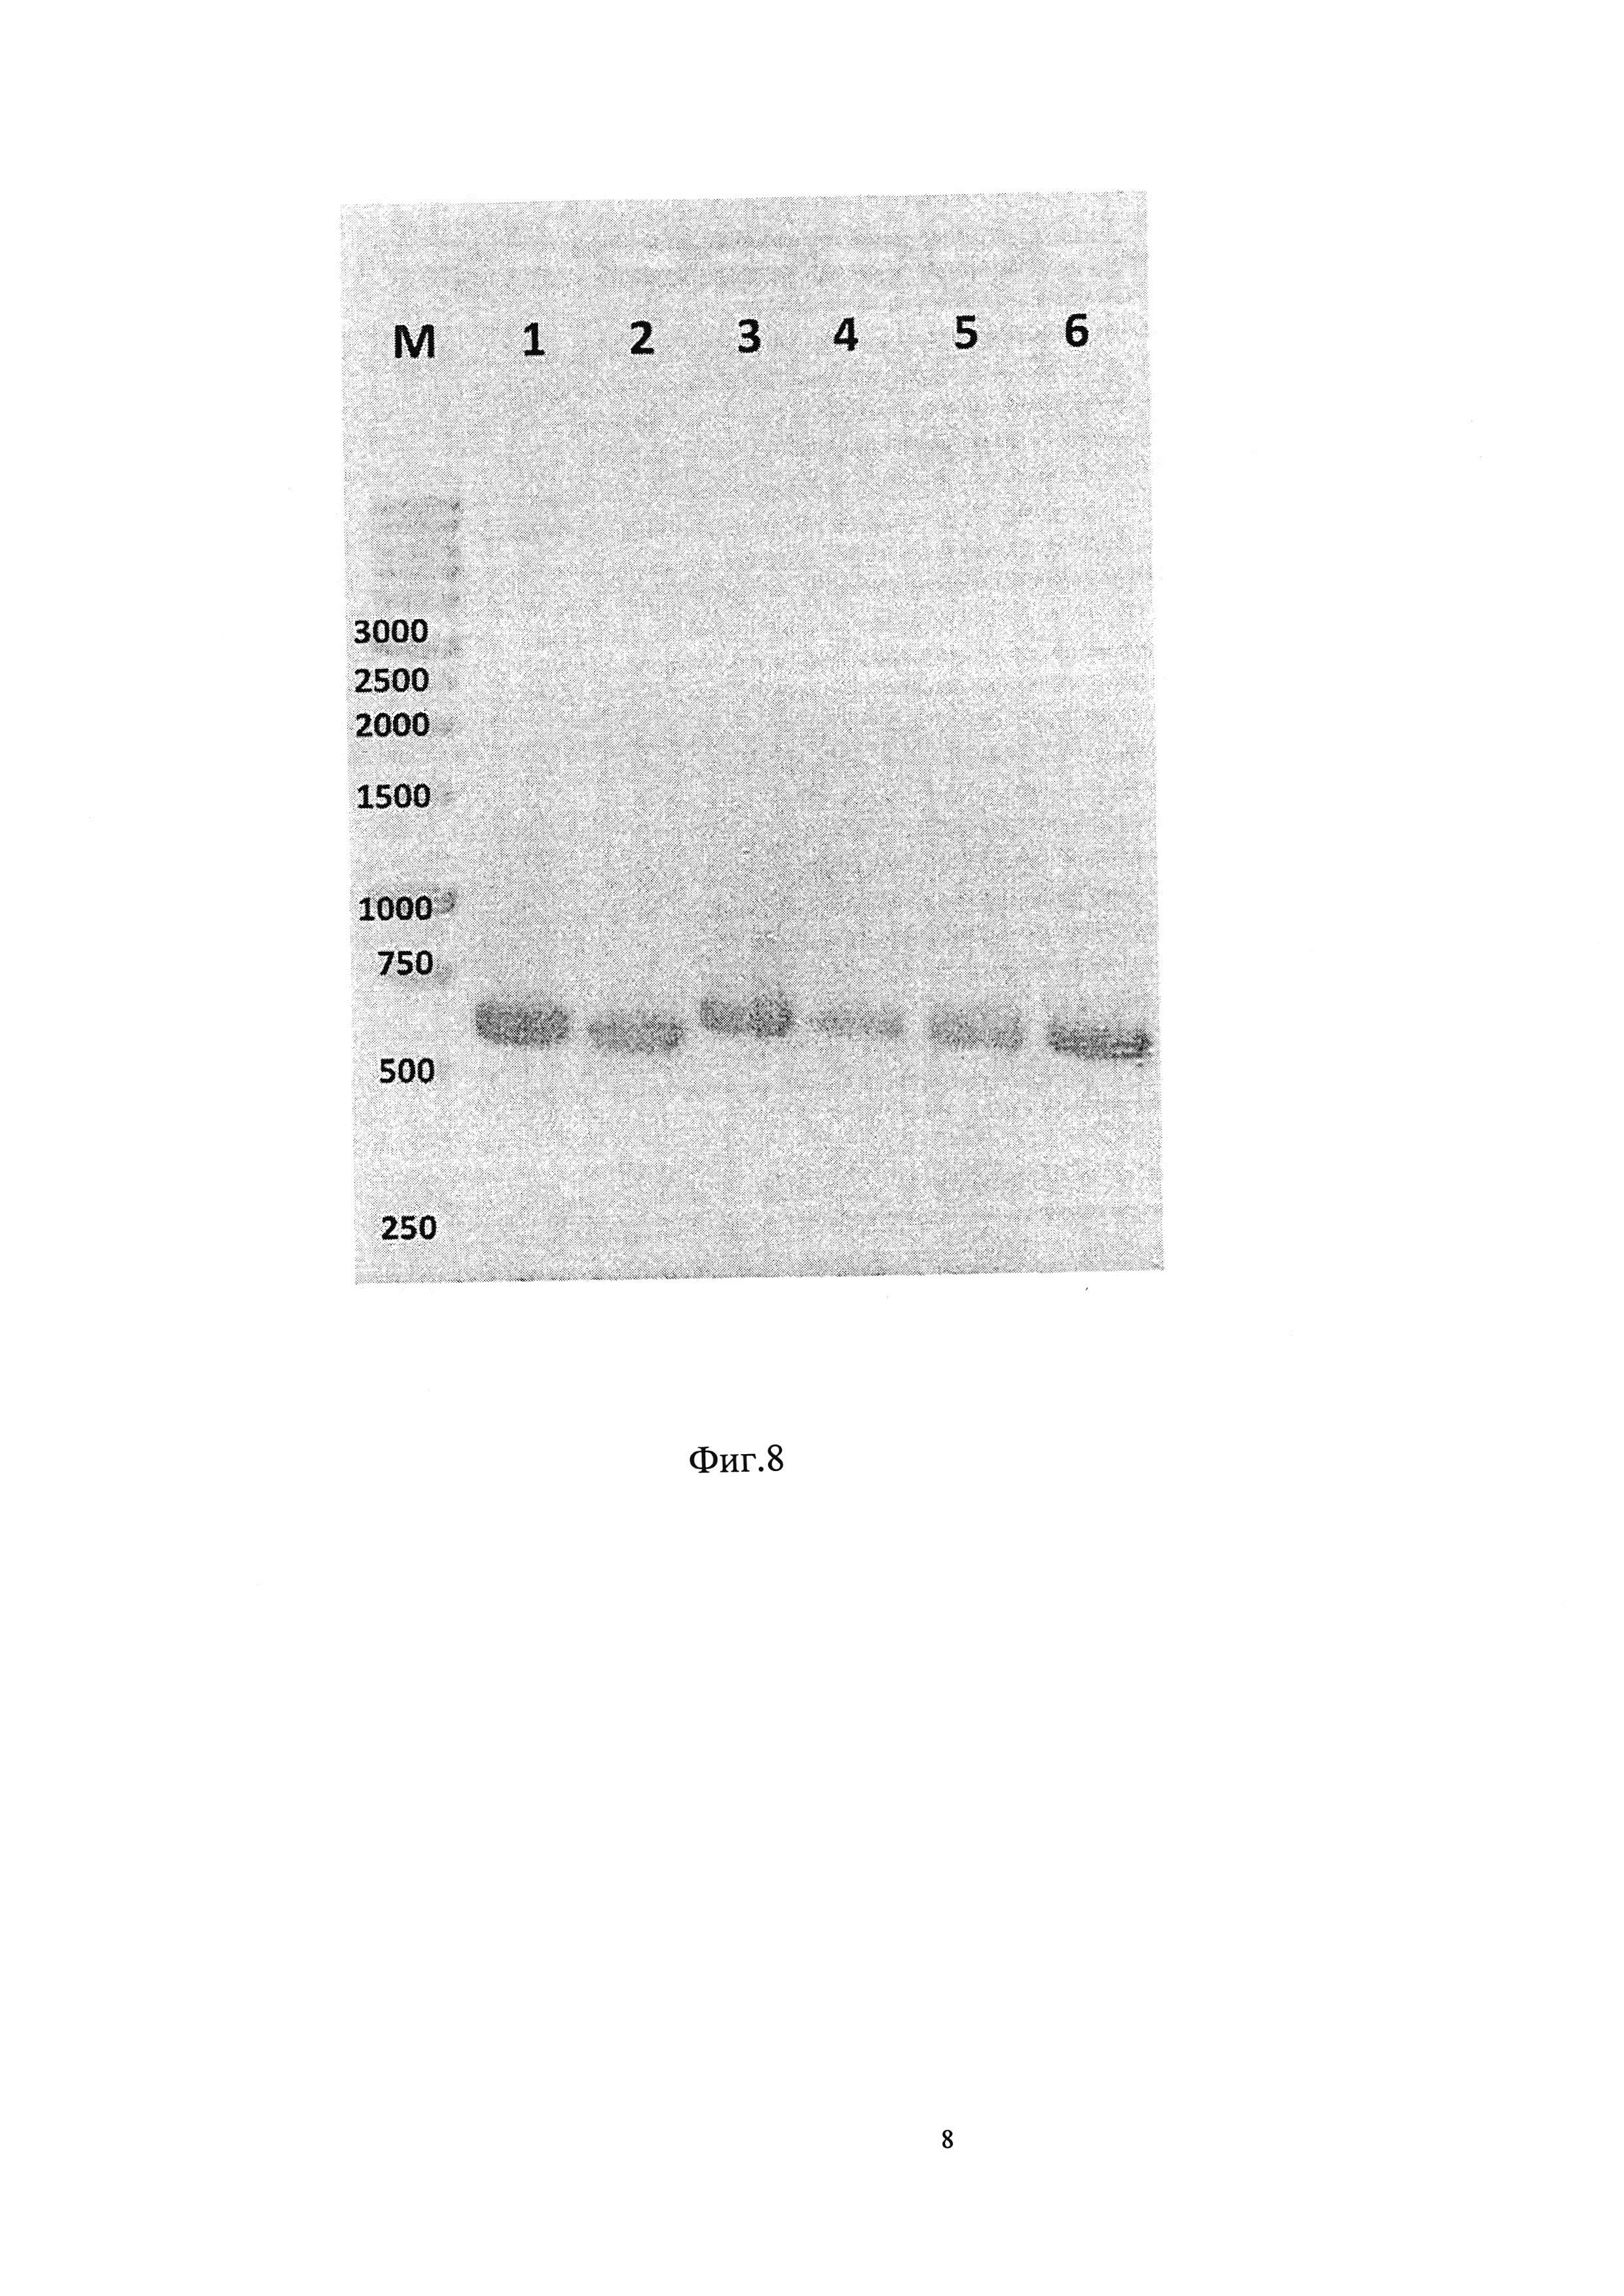 MDCK клетка-продуцент белков вируса гриппа (варианты)